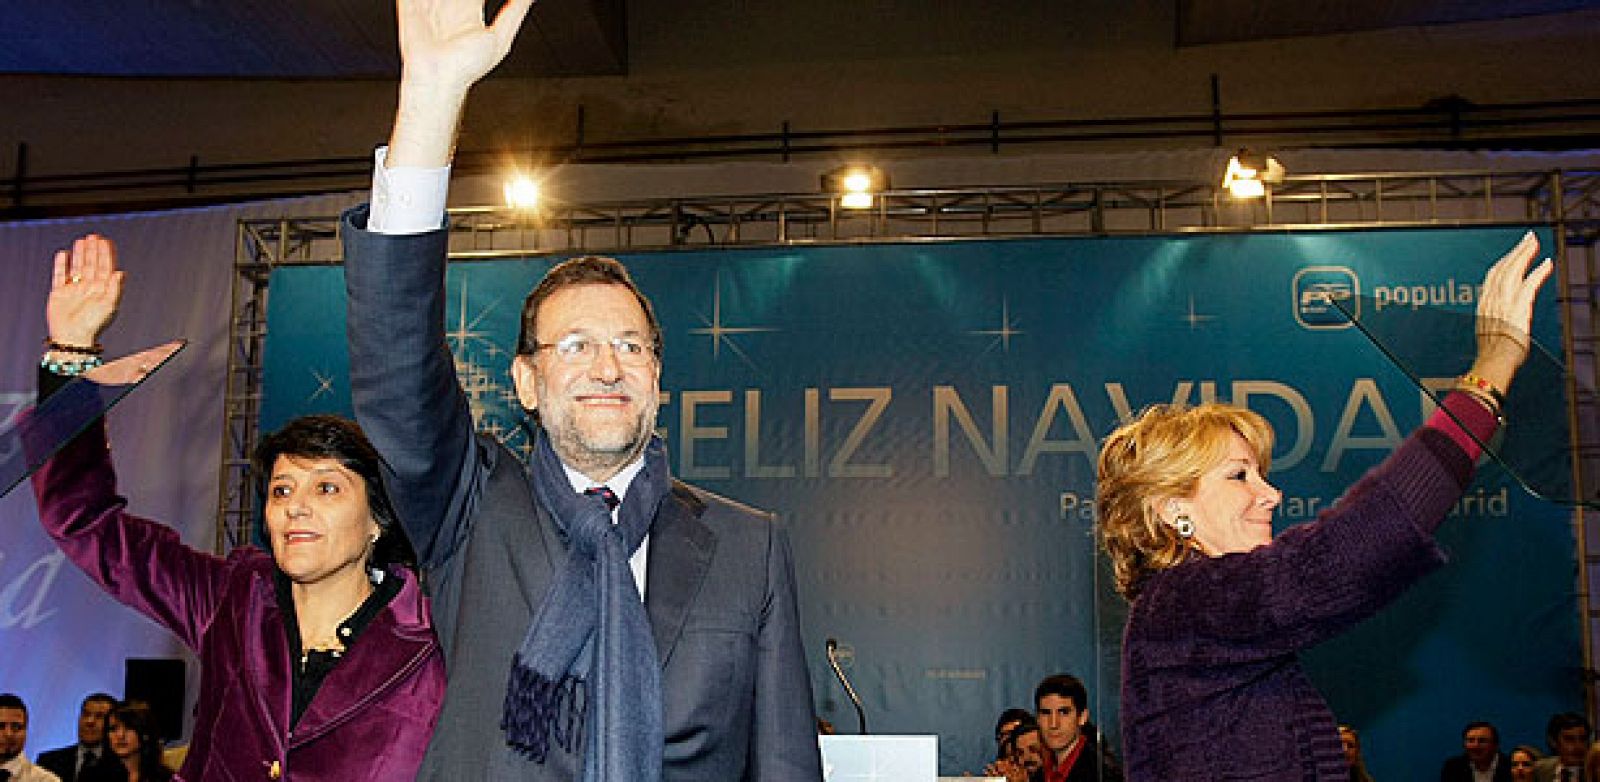 El presidente del PP, Mariano Rajoy; la presidenta de la Comunidad de Madrid, Esperanza Aguirre (d) y la alcaldesa de Algete, Inmaculada Juárez (i) saludan a los asistentes a la tradicional cena de Navidad.